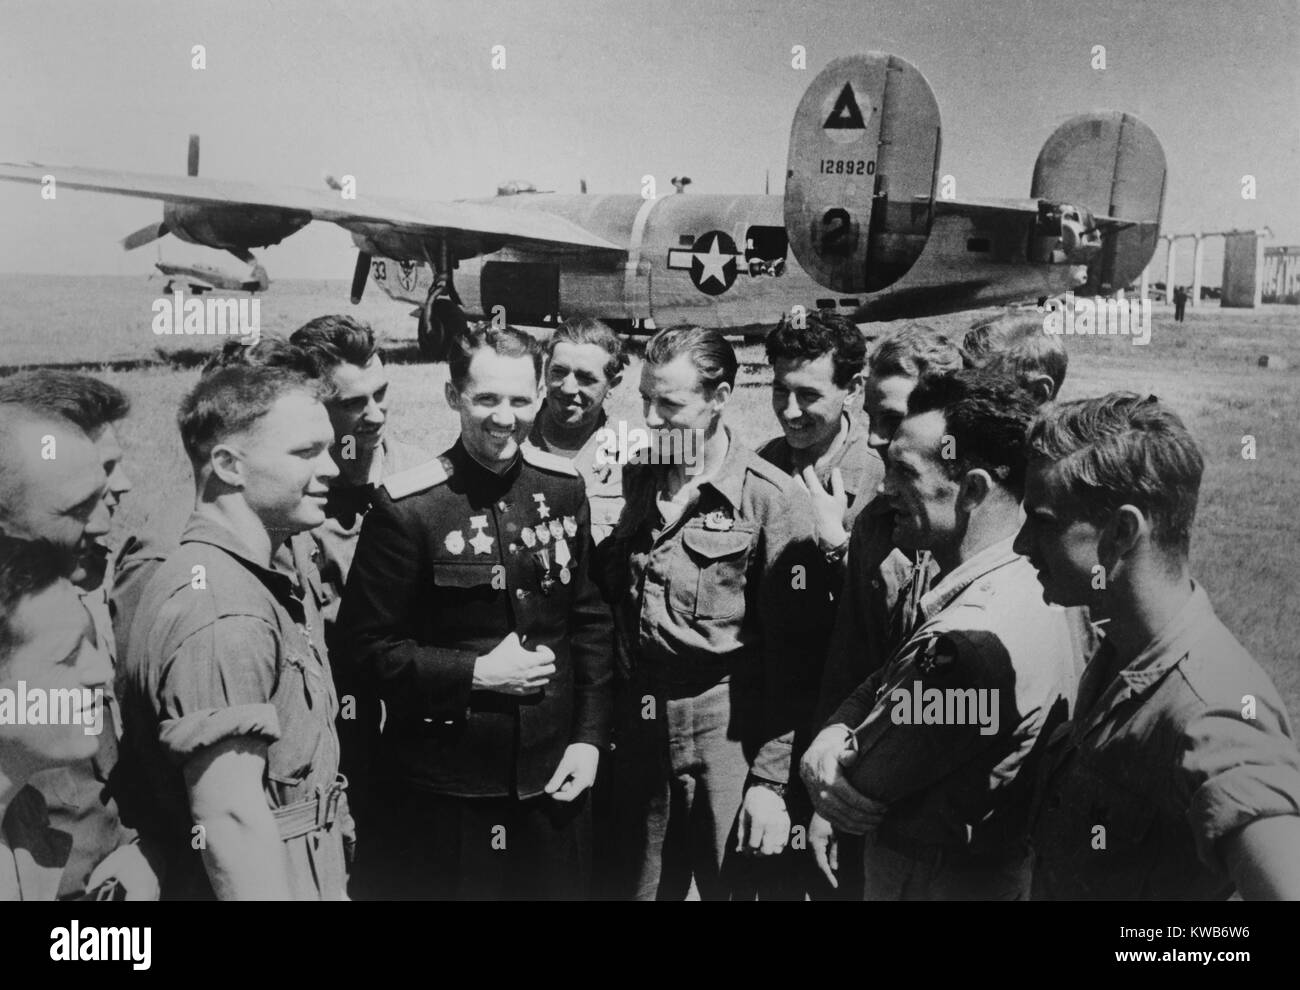 Sowjetische (Russische) Weltkrieg 2 ace-Mikhail Avdeev mit amerikanischen Piloten. Im Hintergrund ist ein Consolidated B-24 Liberator Bomber, in Sewastopol, Ukraine, 1944. Foto von Evgeni Khaldei. (BSLOC 2014 8 54) Stockfoto